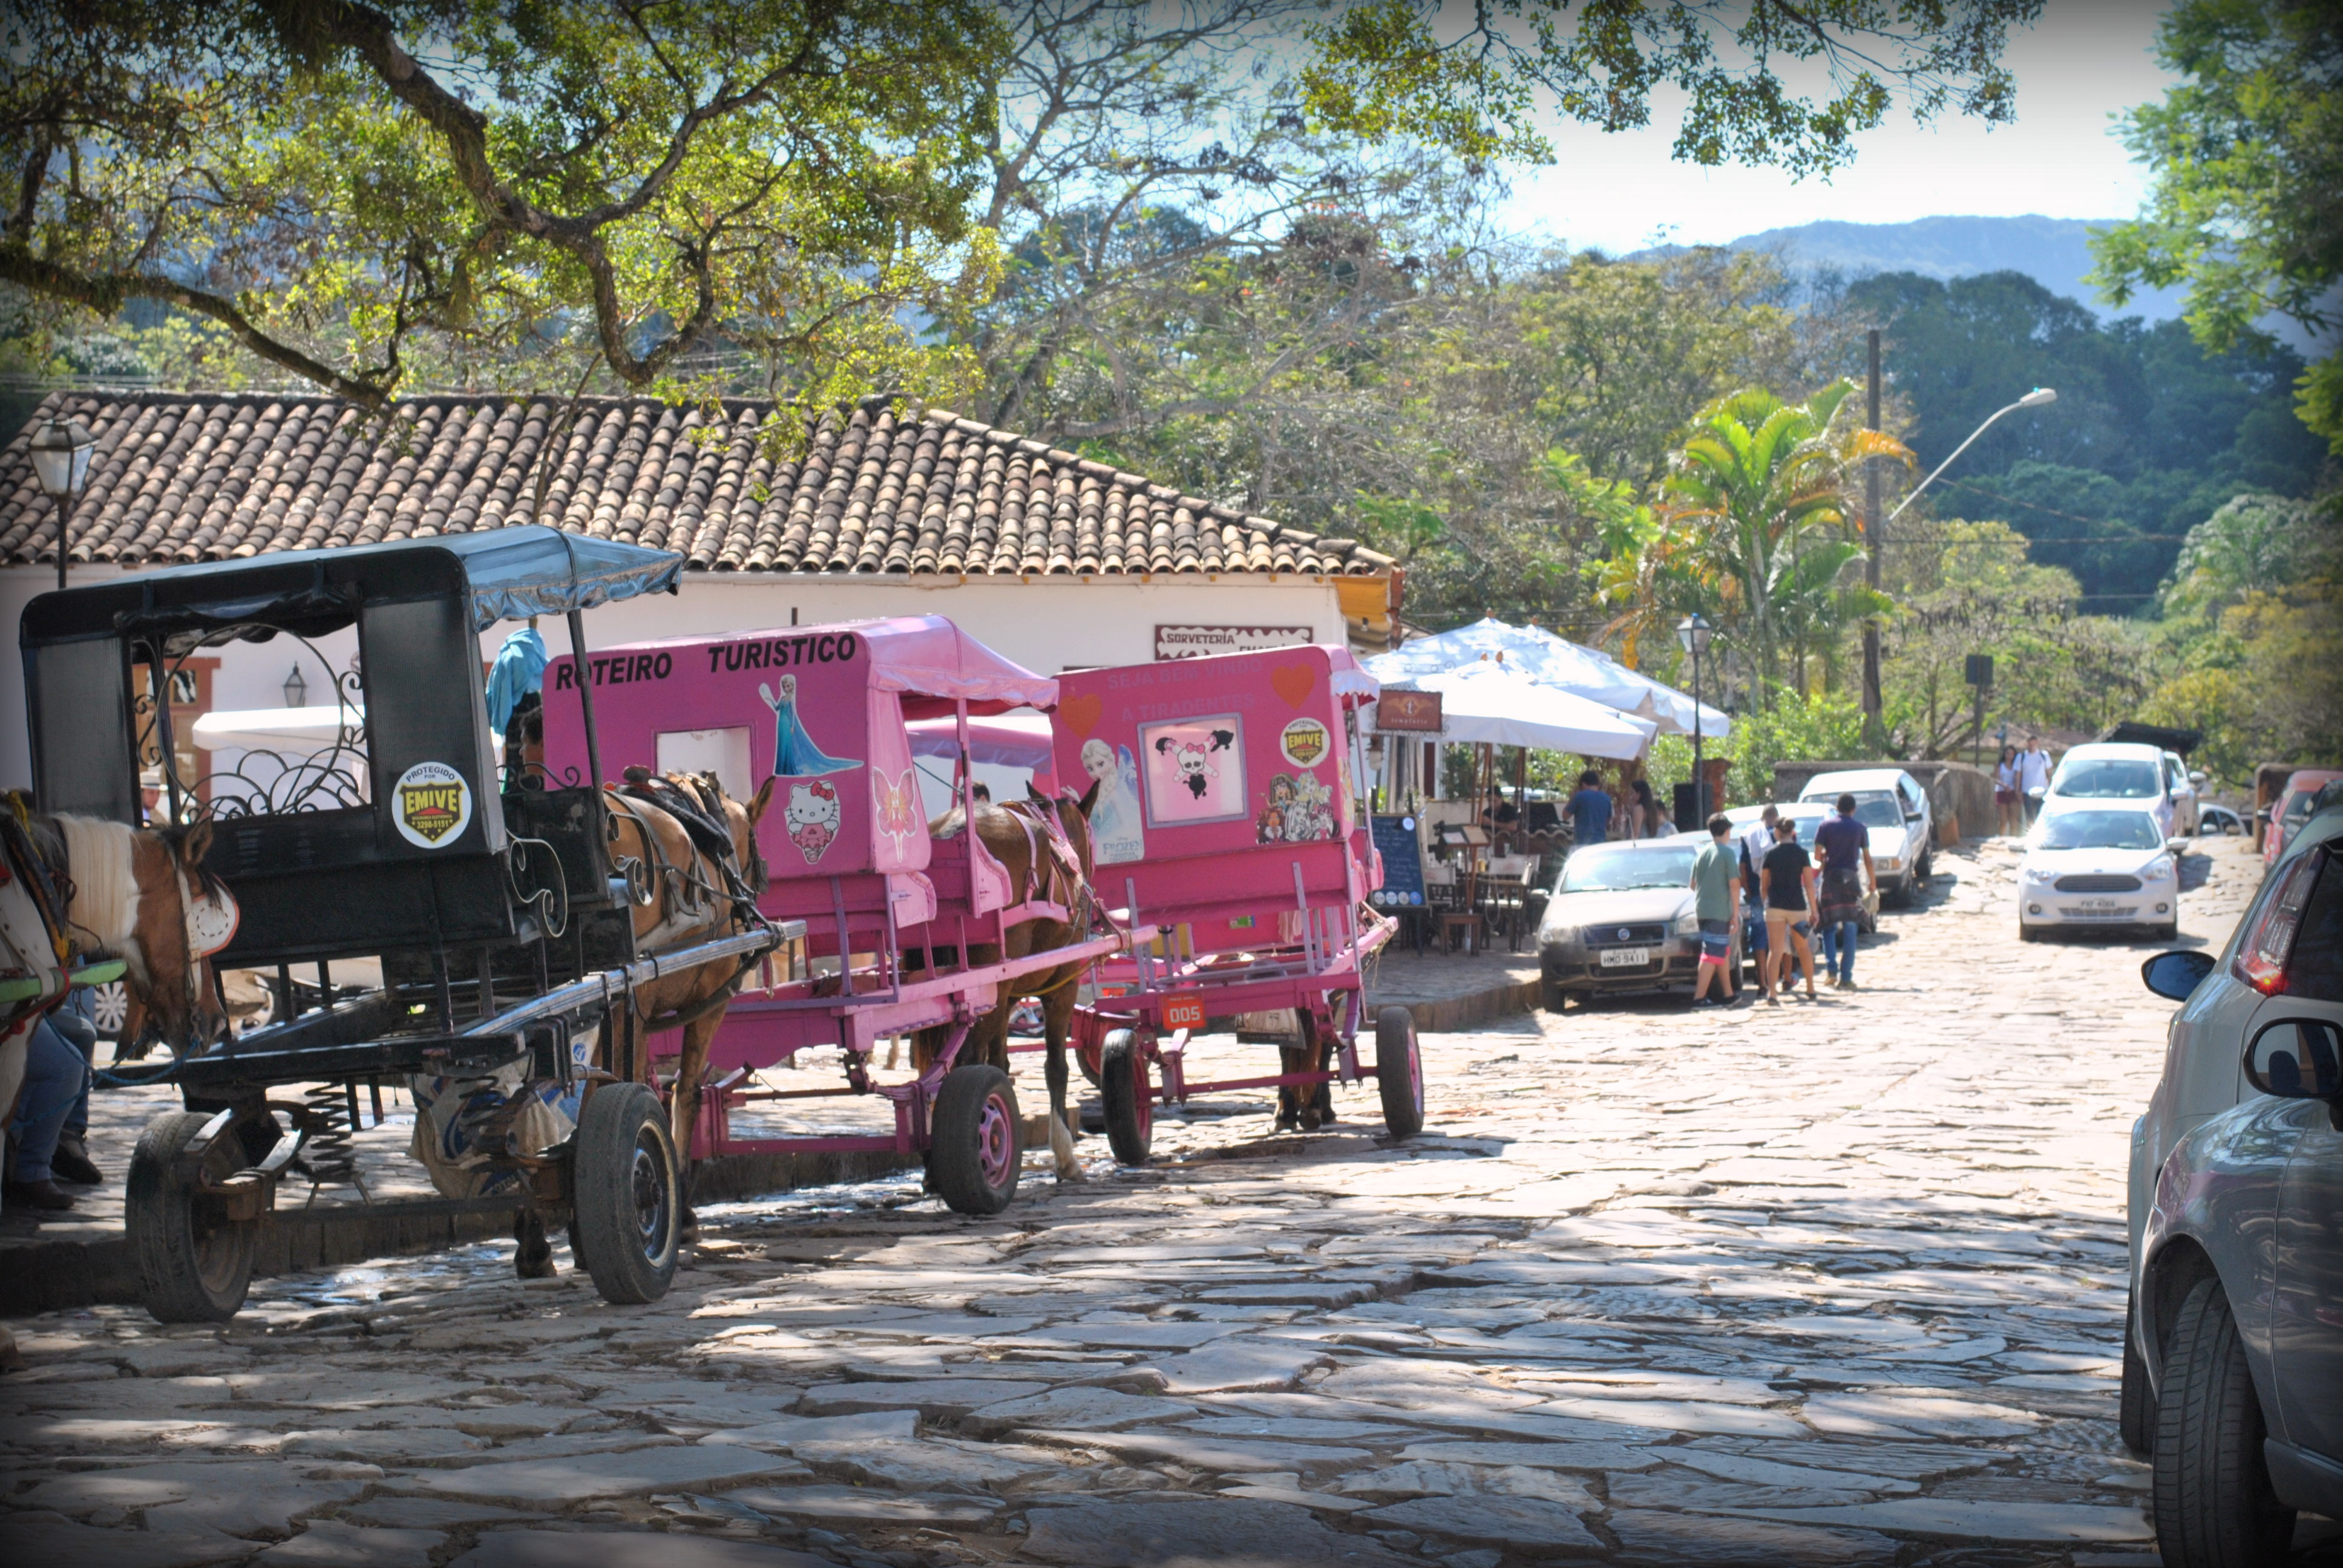 charretes em Tiradentes Minas Gerais